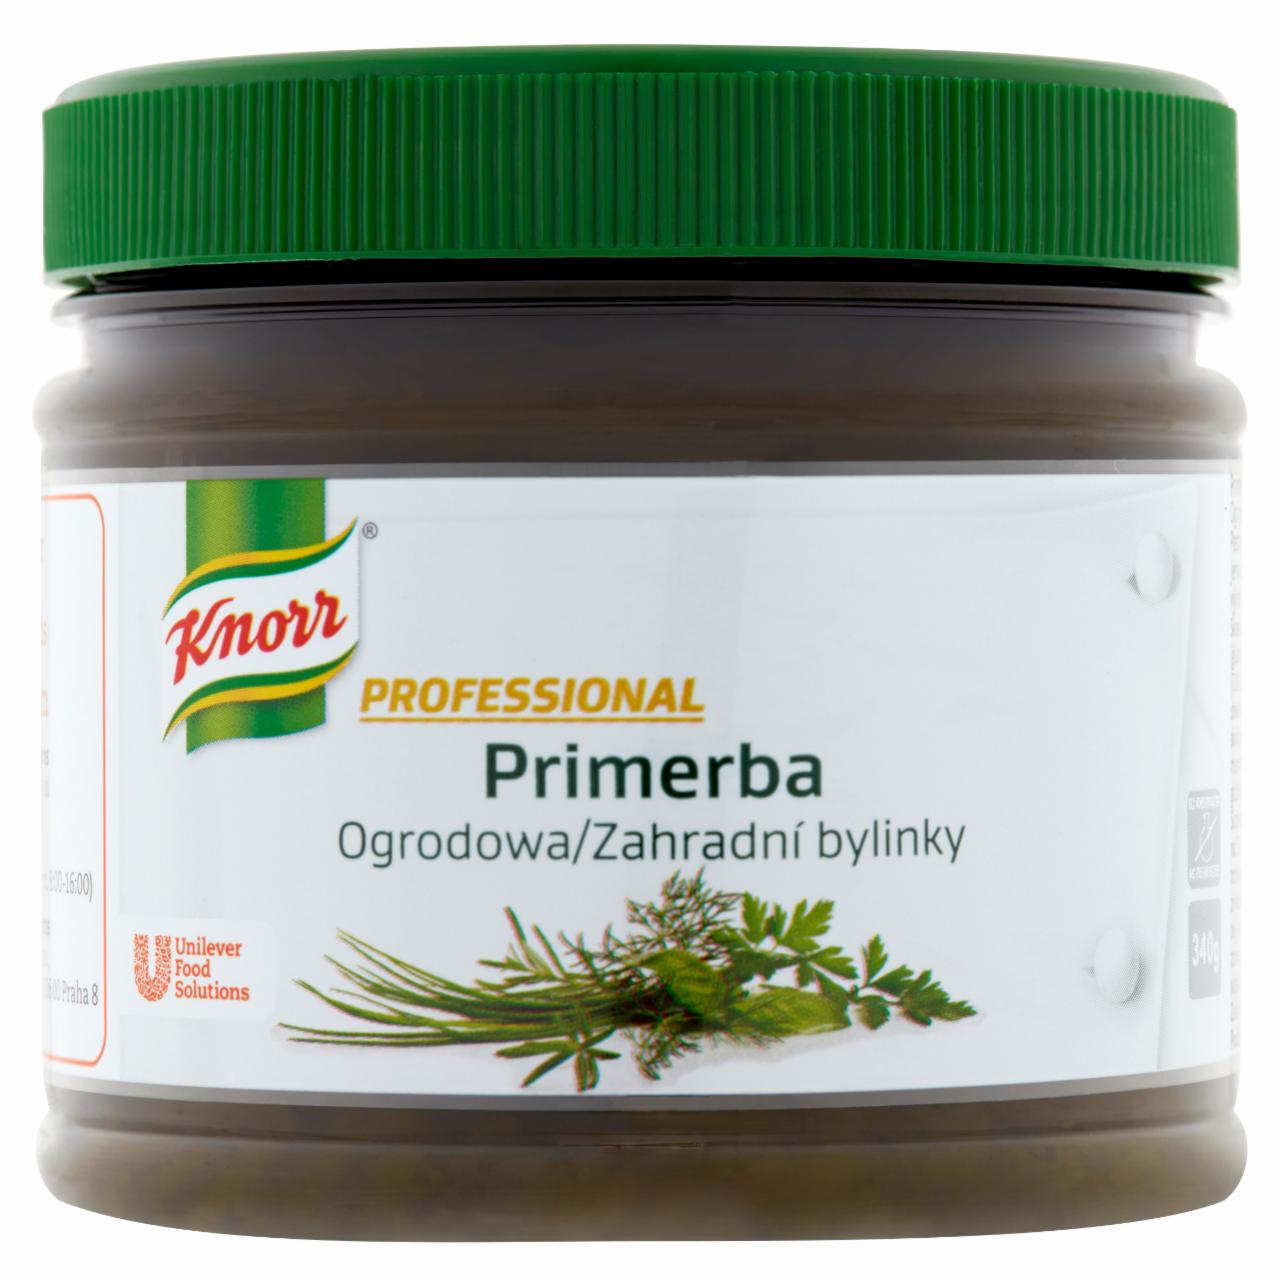 Zdjęcia - Knorr Professional Primerba ogrodowa Pasta ziołowa do przyprawiania potraw 340 g